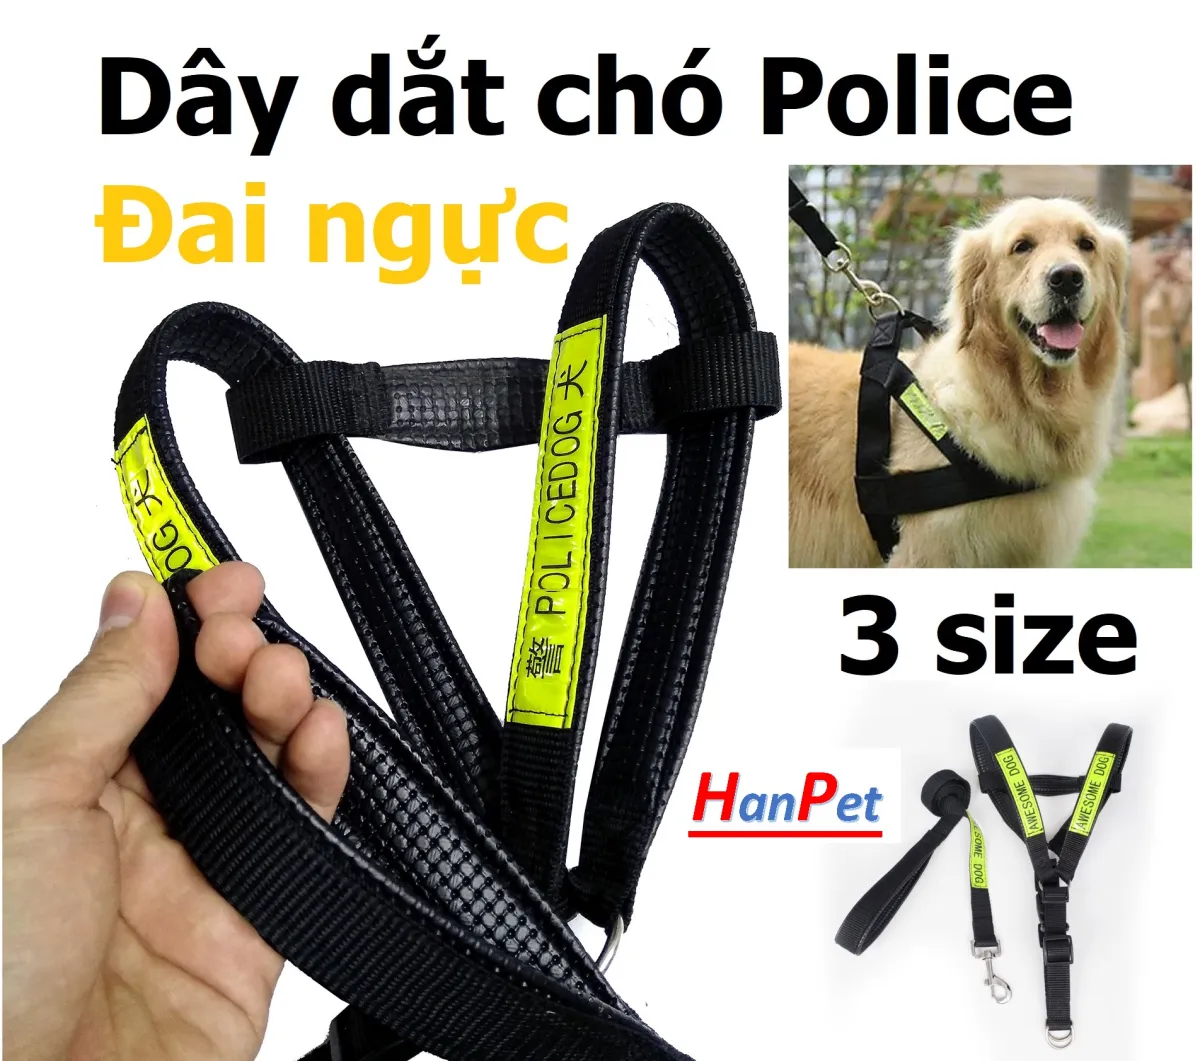 Dây dắt chó: Cùng xem hình ảnh về những chú chó dễ thương được dẫn dắt bằng những chiếc dây dắt chất lượng, tạo nên một điều kiện an toàn cho chúng đi dạo phố vui chơi.